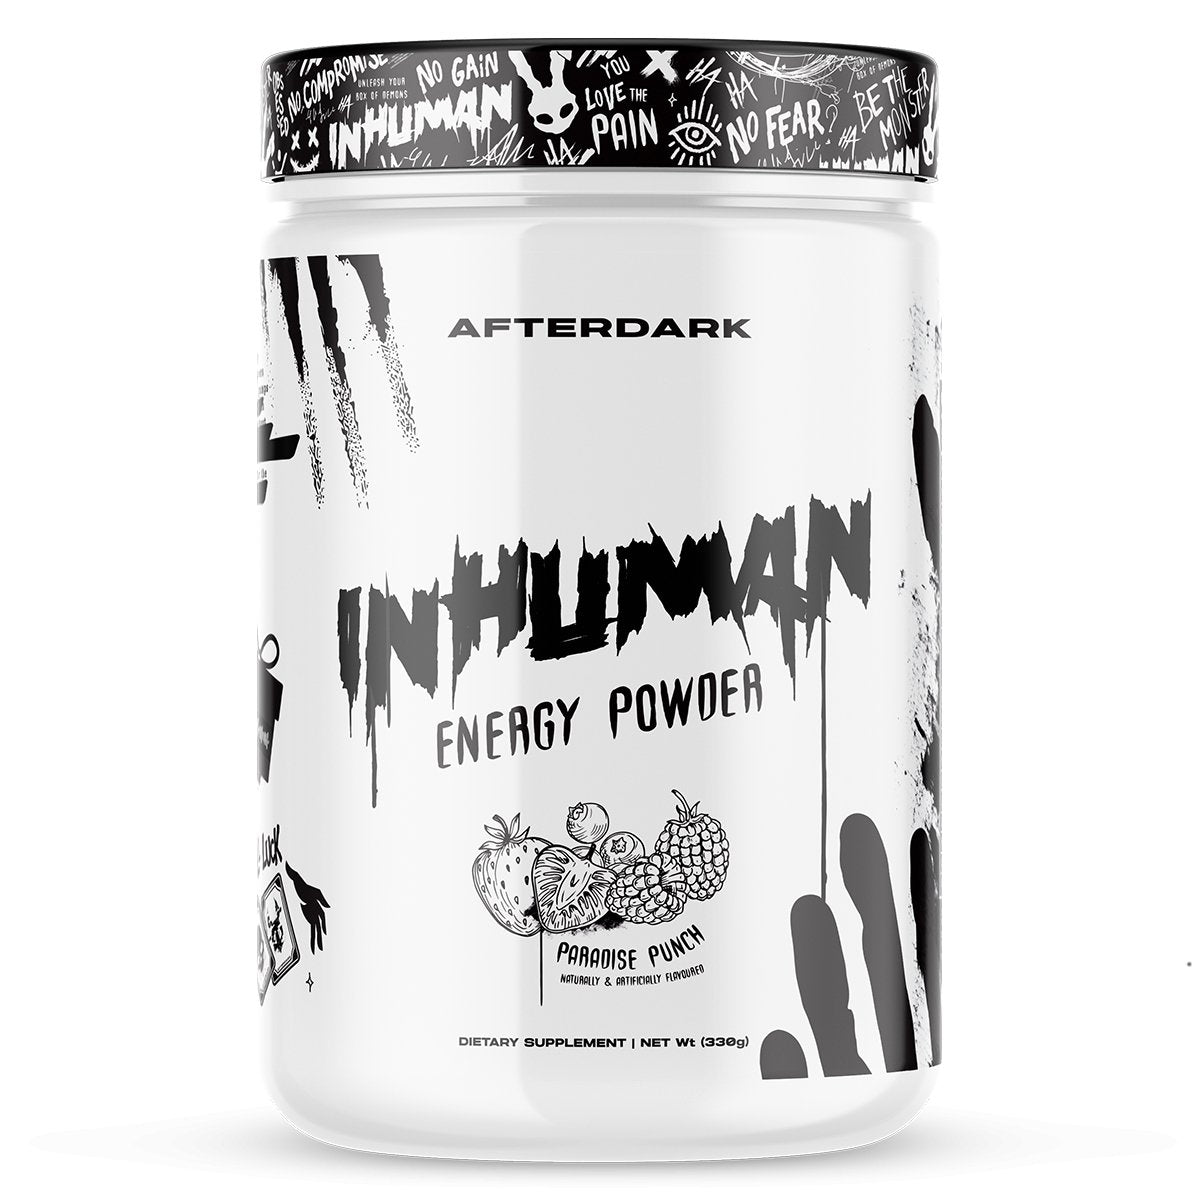 Afterdark InhumanAfterDark SupplementsPre-Workout